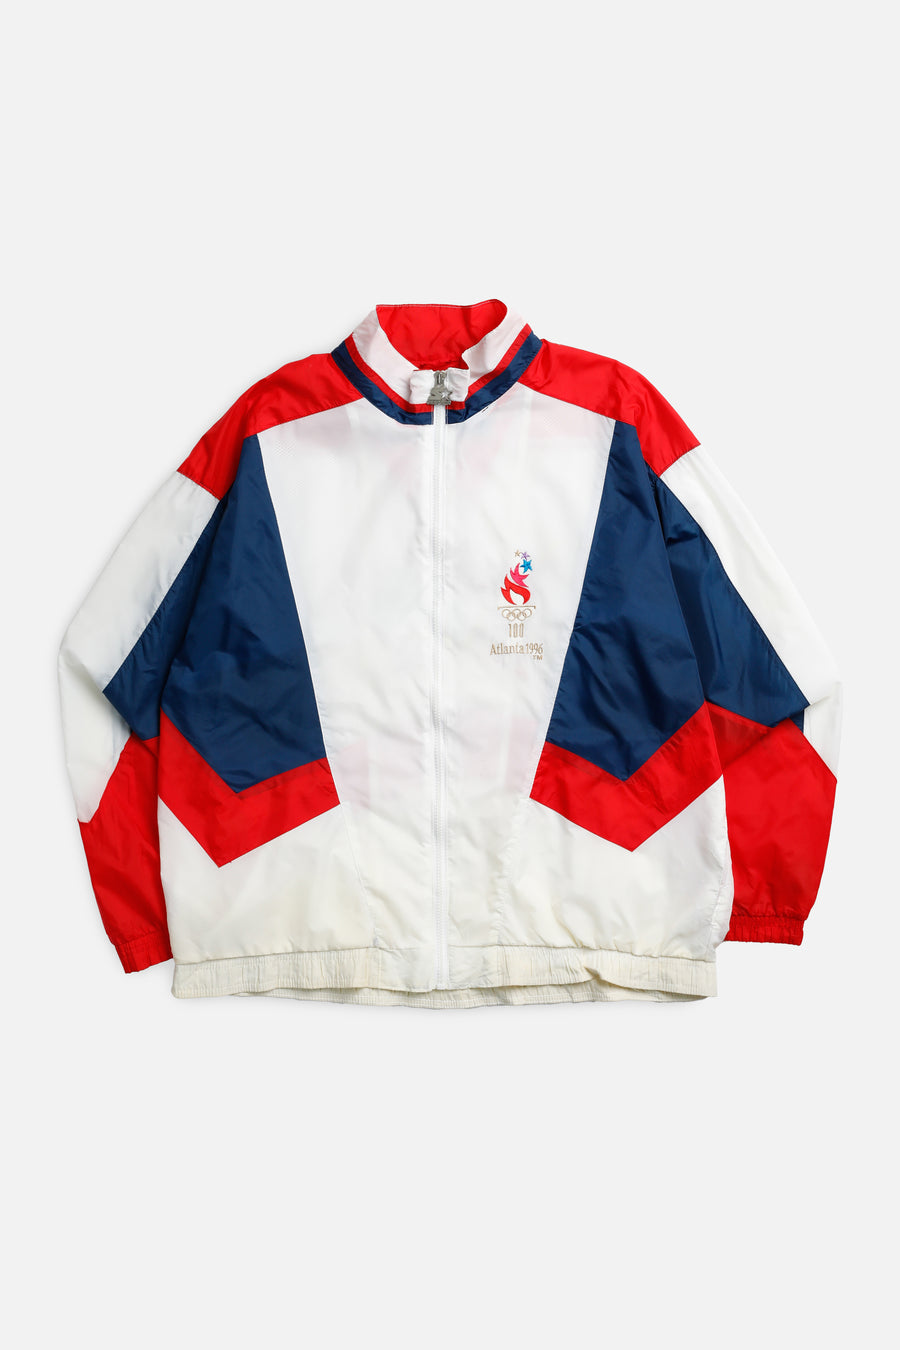 Vintage Olympics USA Windbreaker Jacket - L